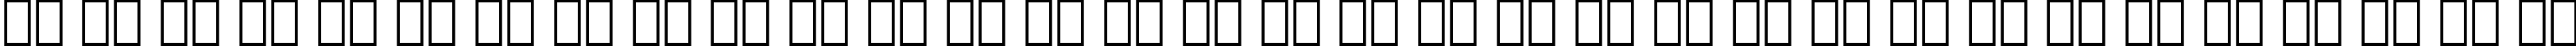 Пример написания русского алфавита шрифтом Kabel Ultra BT